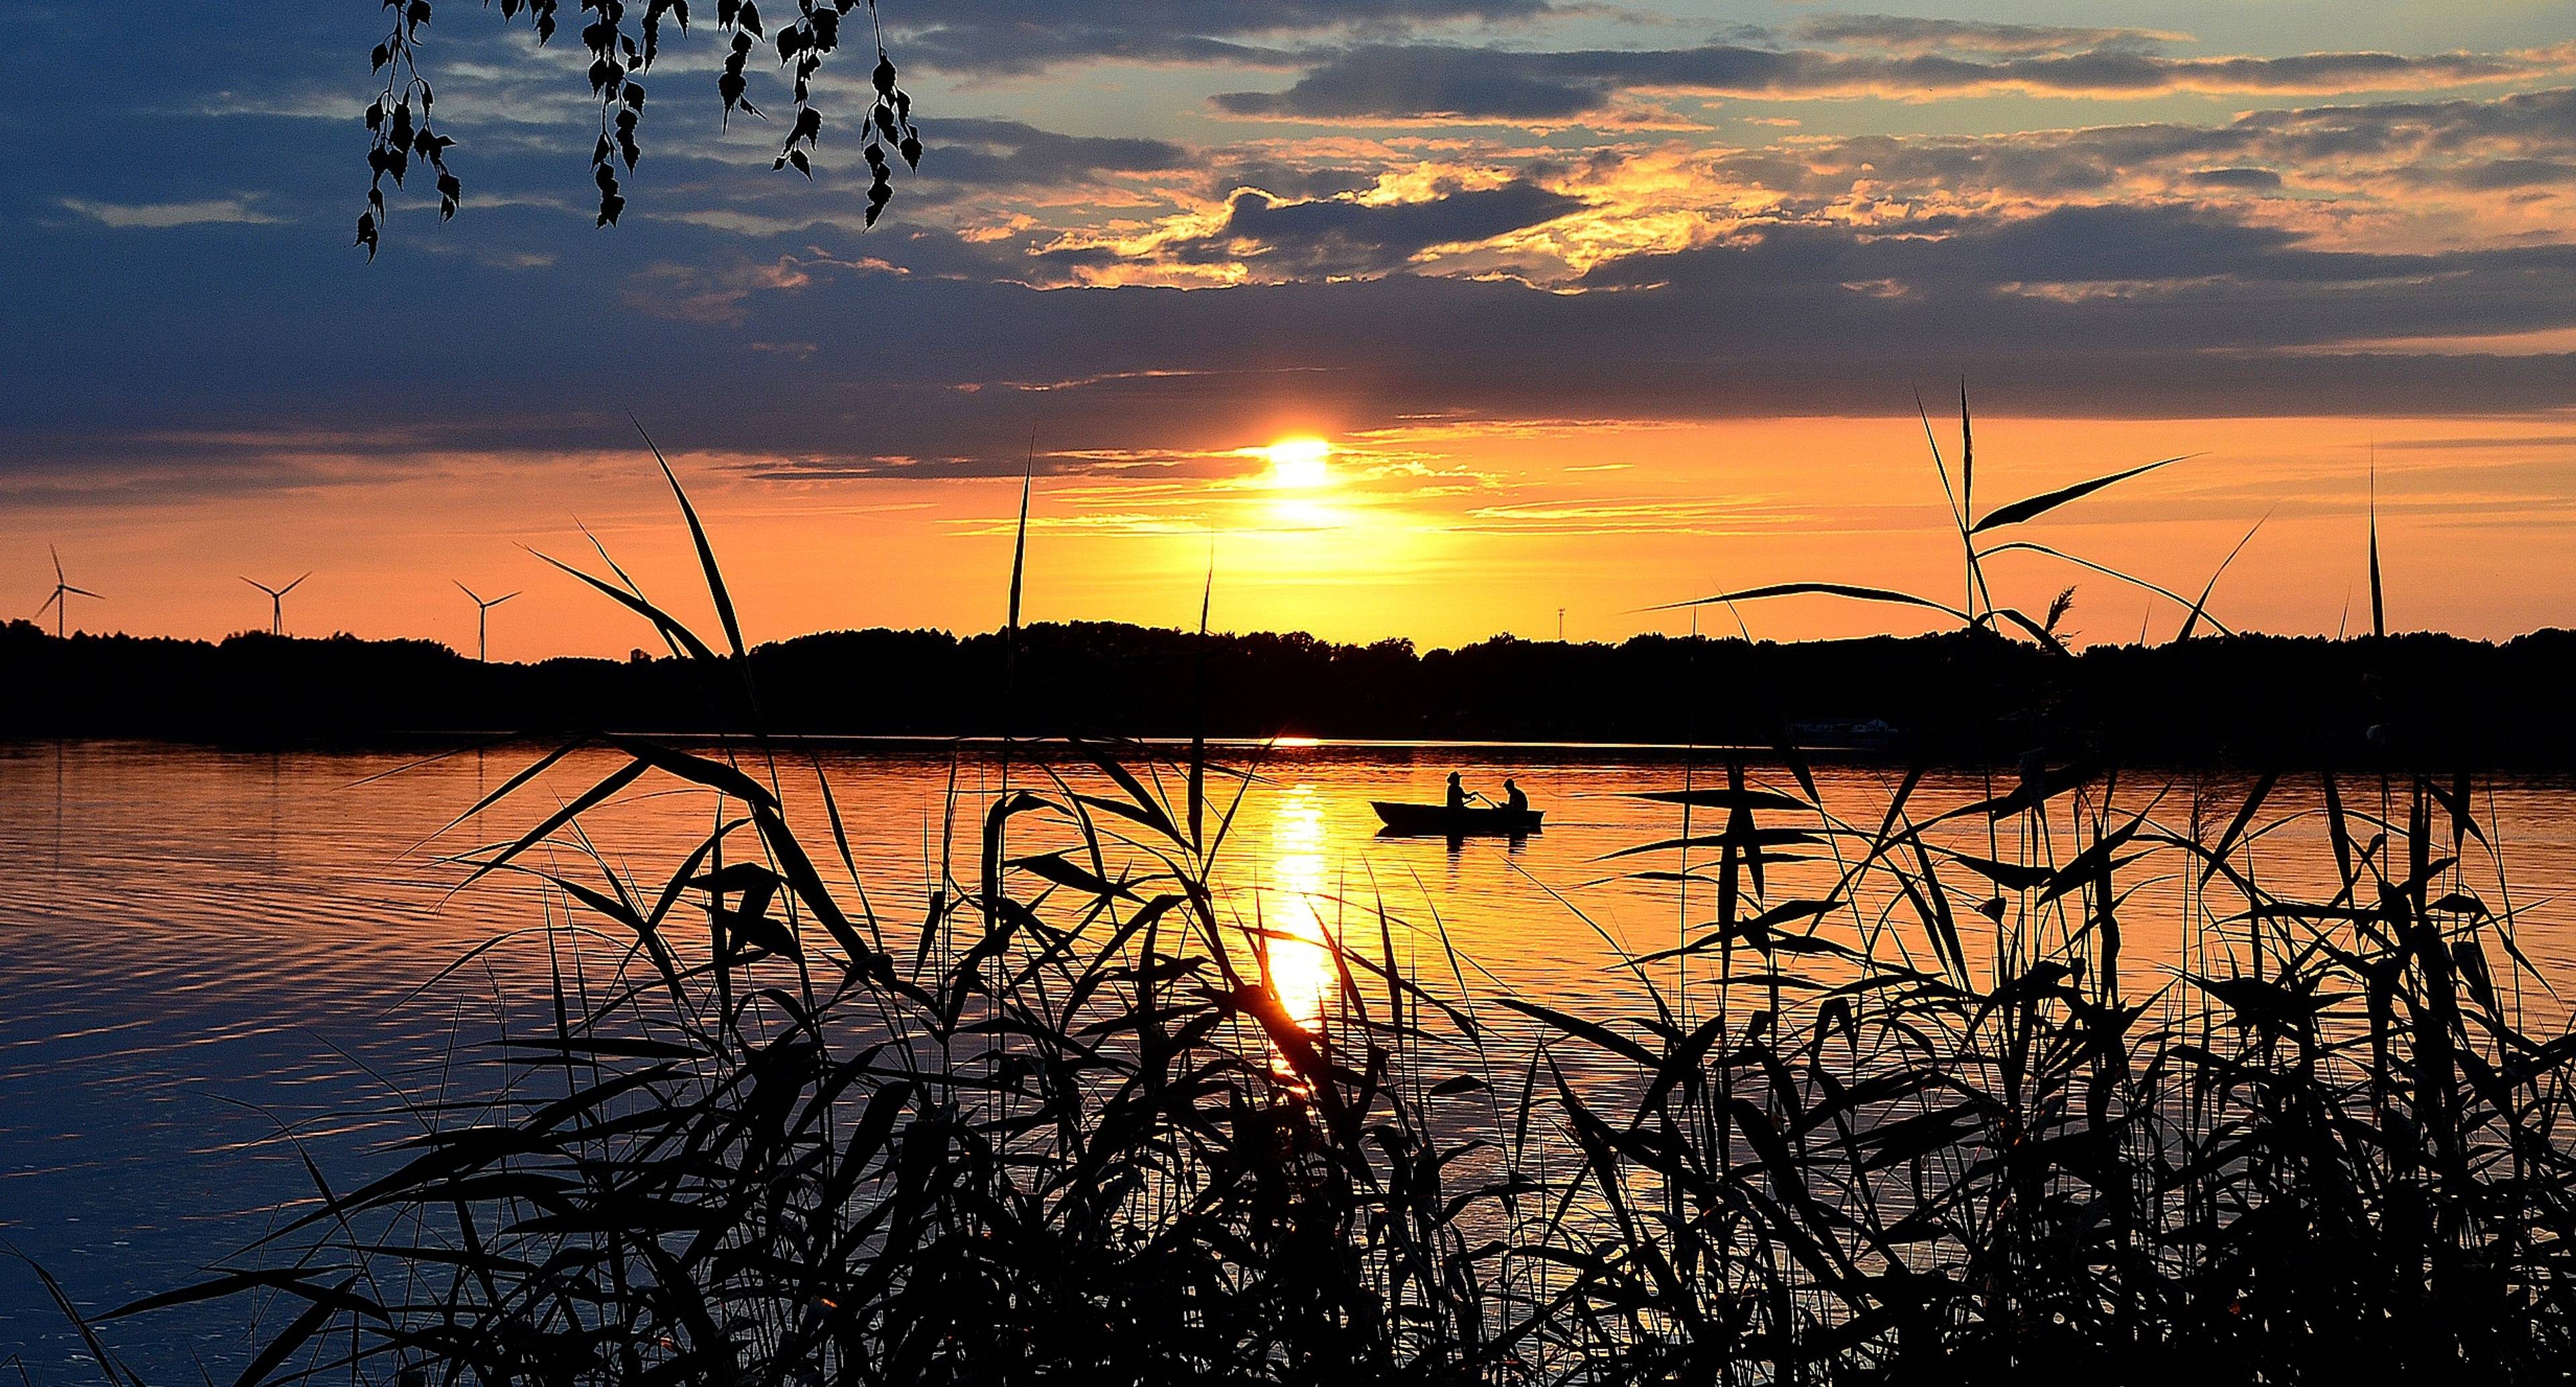 Sunset on Lake Lipovsky